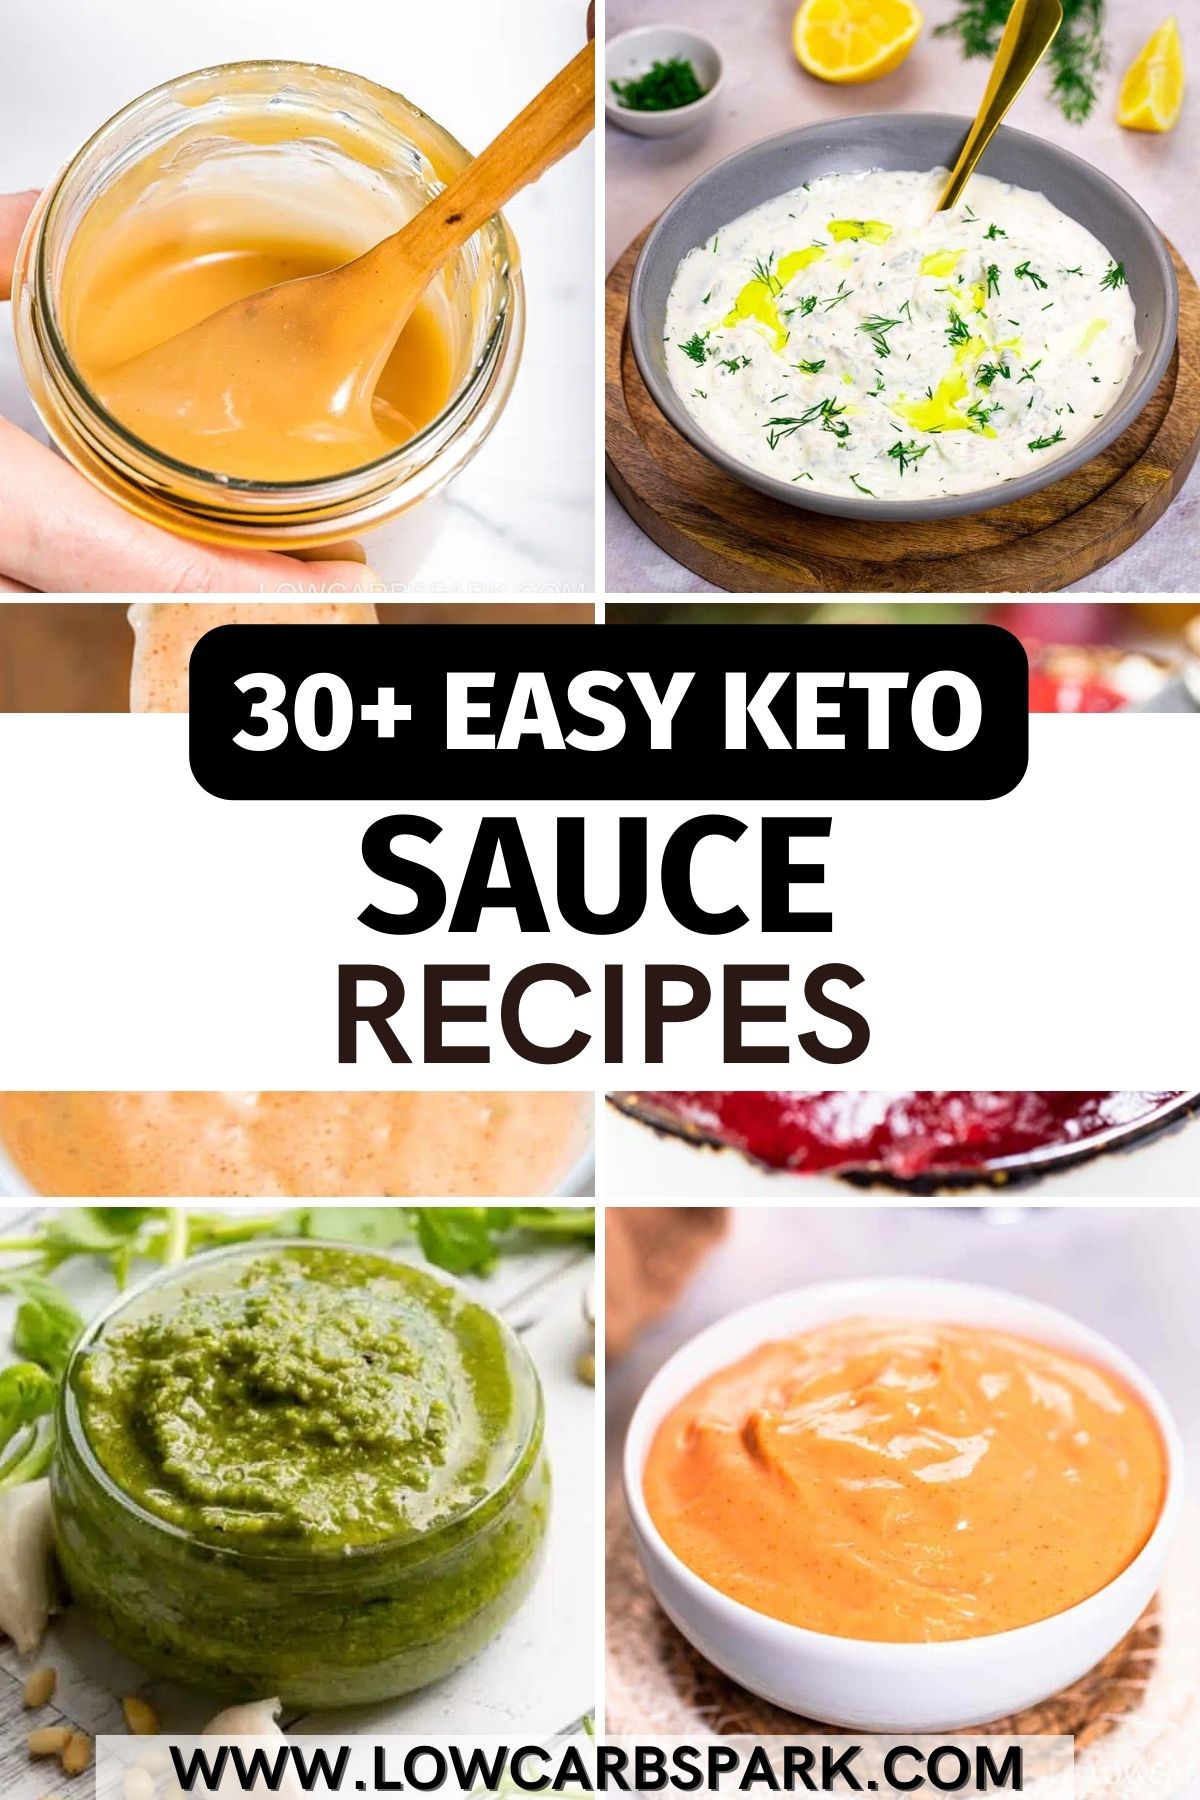 30+ Easy Keto Sauce Recipes